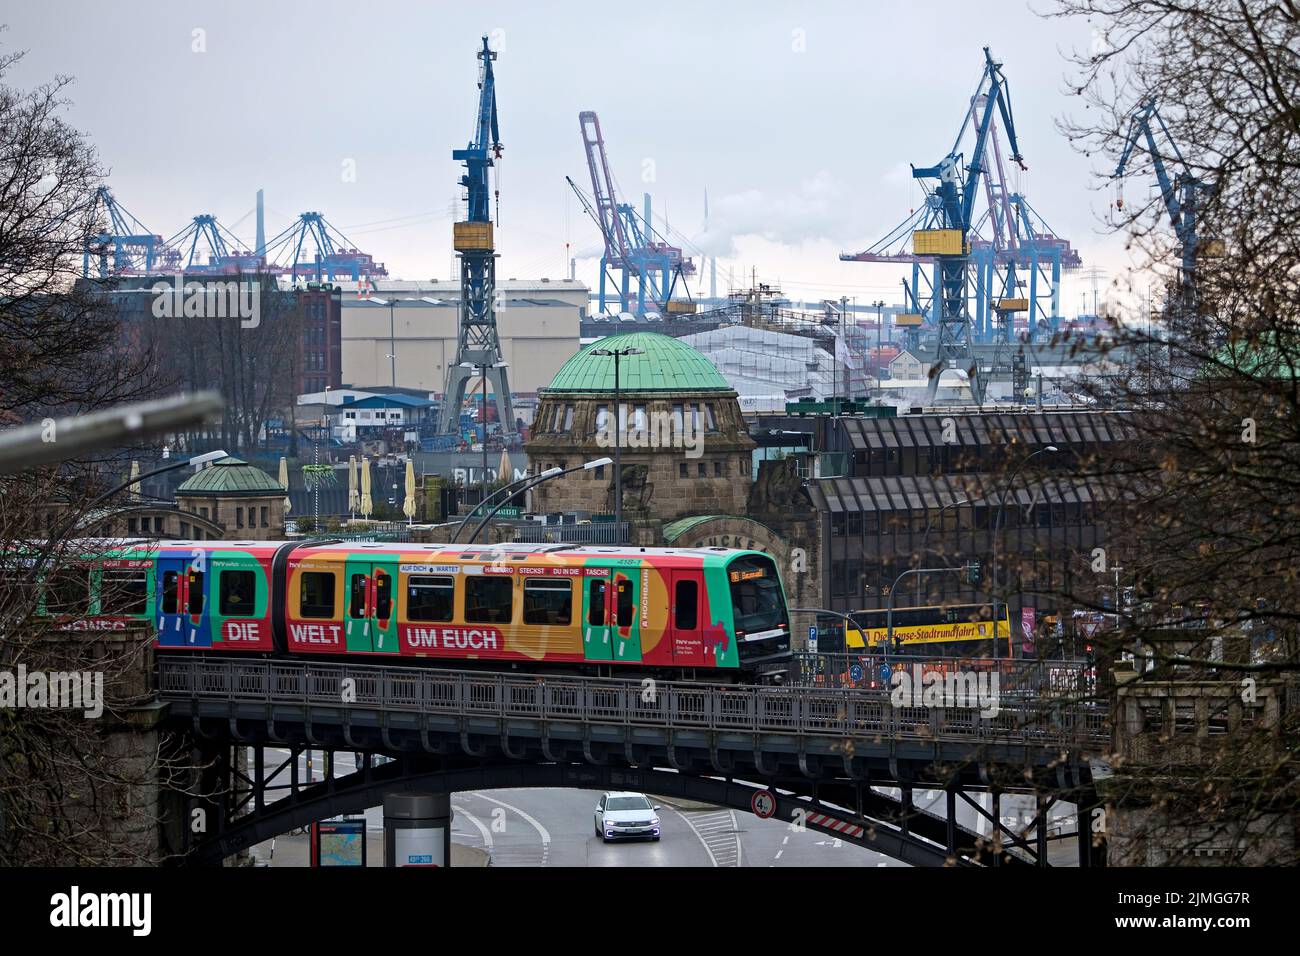 Hochbahn, Landungsbrücke 4 und Kräne am Hafen, St. Pauli, Hamburg, Deutschland, Europa Stockfoto